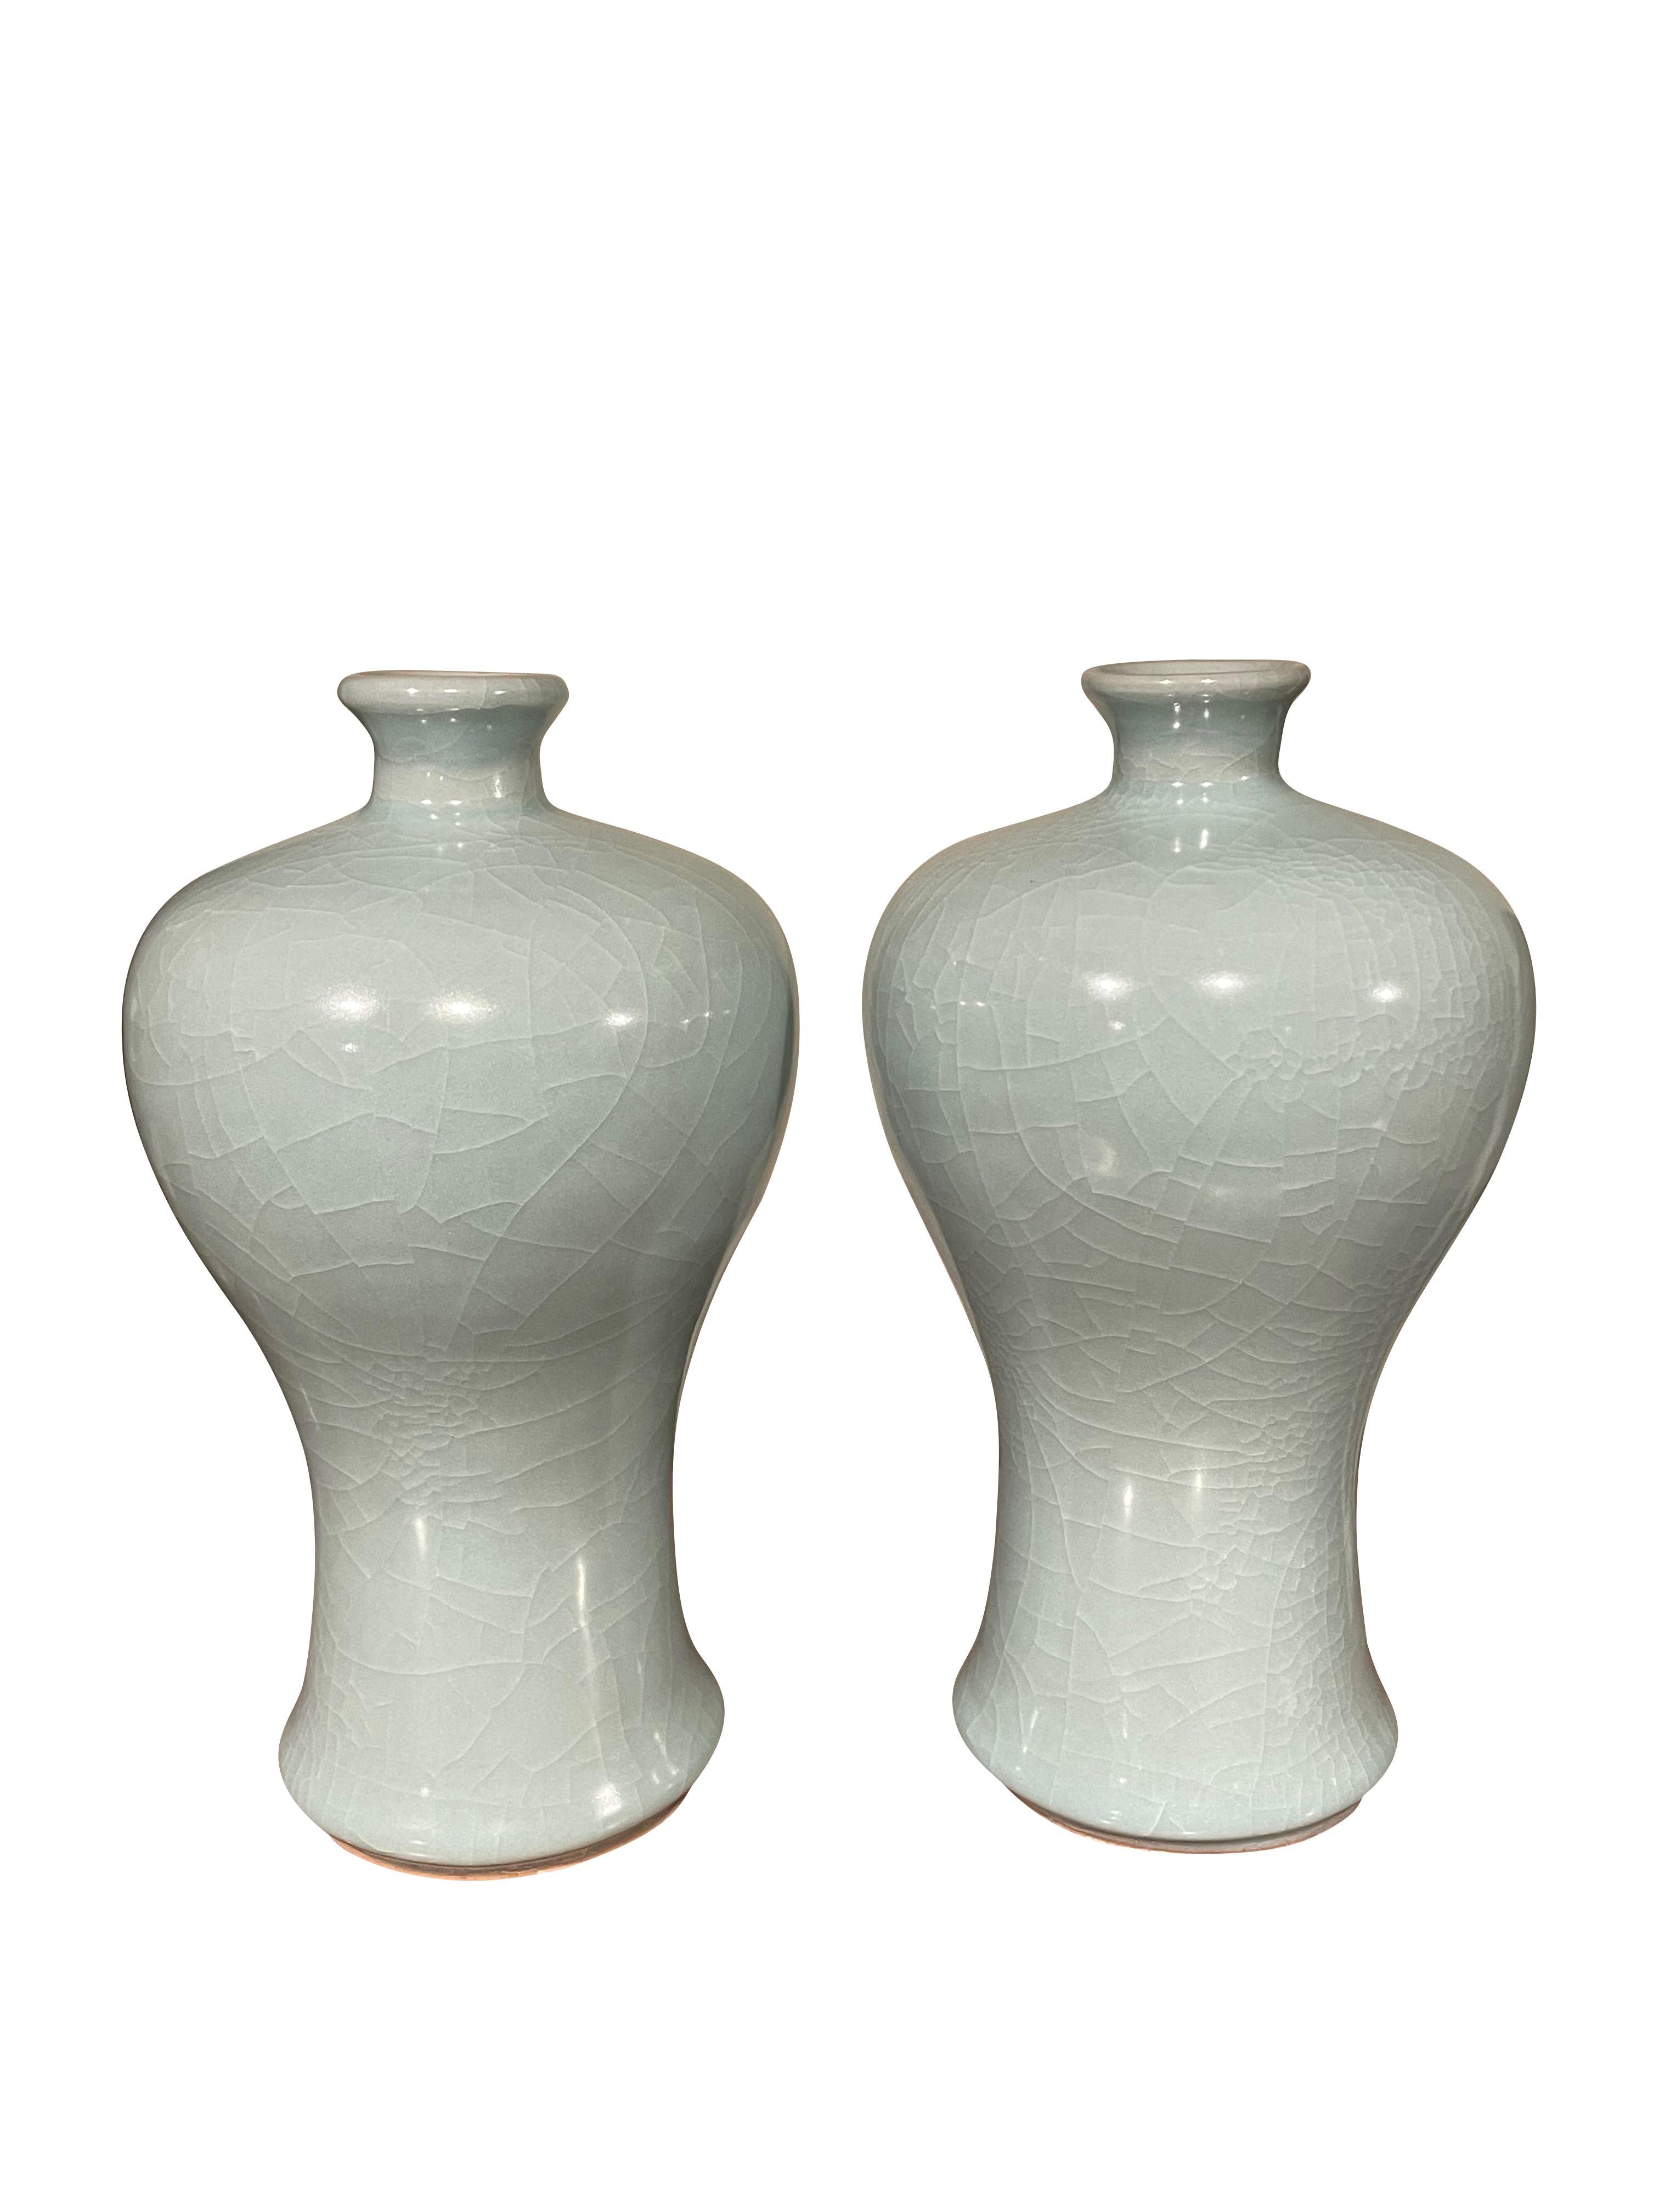 Vase contemporain chinois de couleur turquoise pâle.
Forme incurvée avec petite ouverture pour le bec.
Deux disponibles et vendus individuellement.
Une large collection est disponible avec des tailles et des formes variées.
ARRIVÉE AVRIL